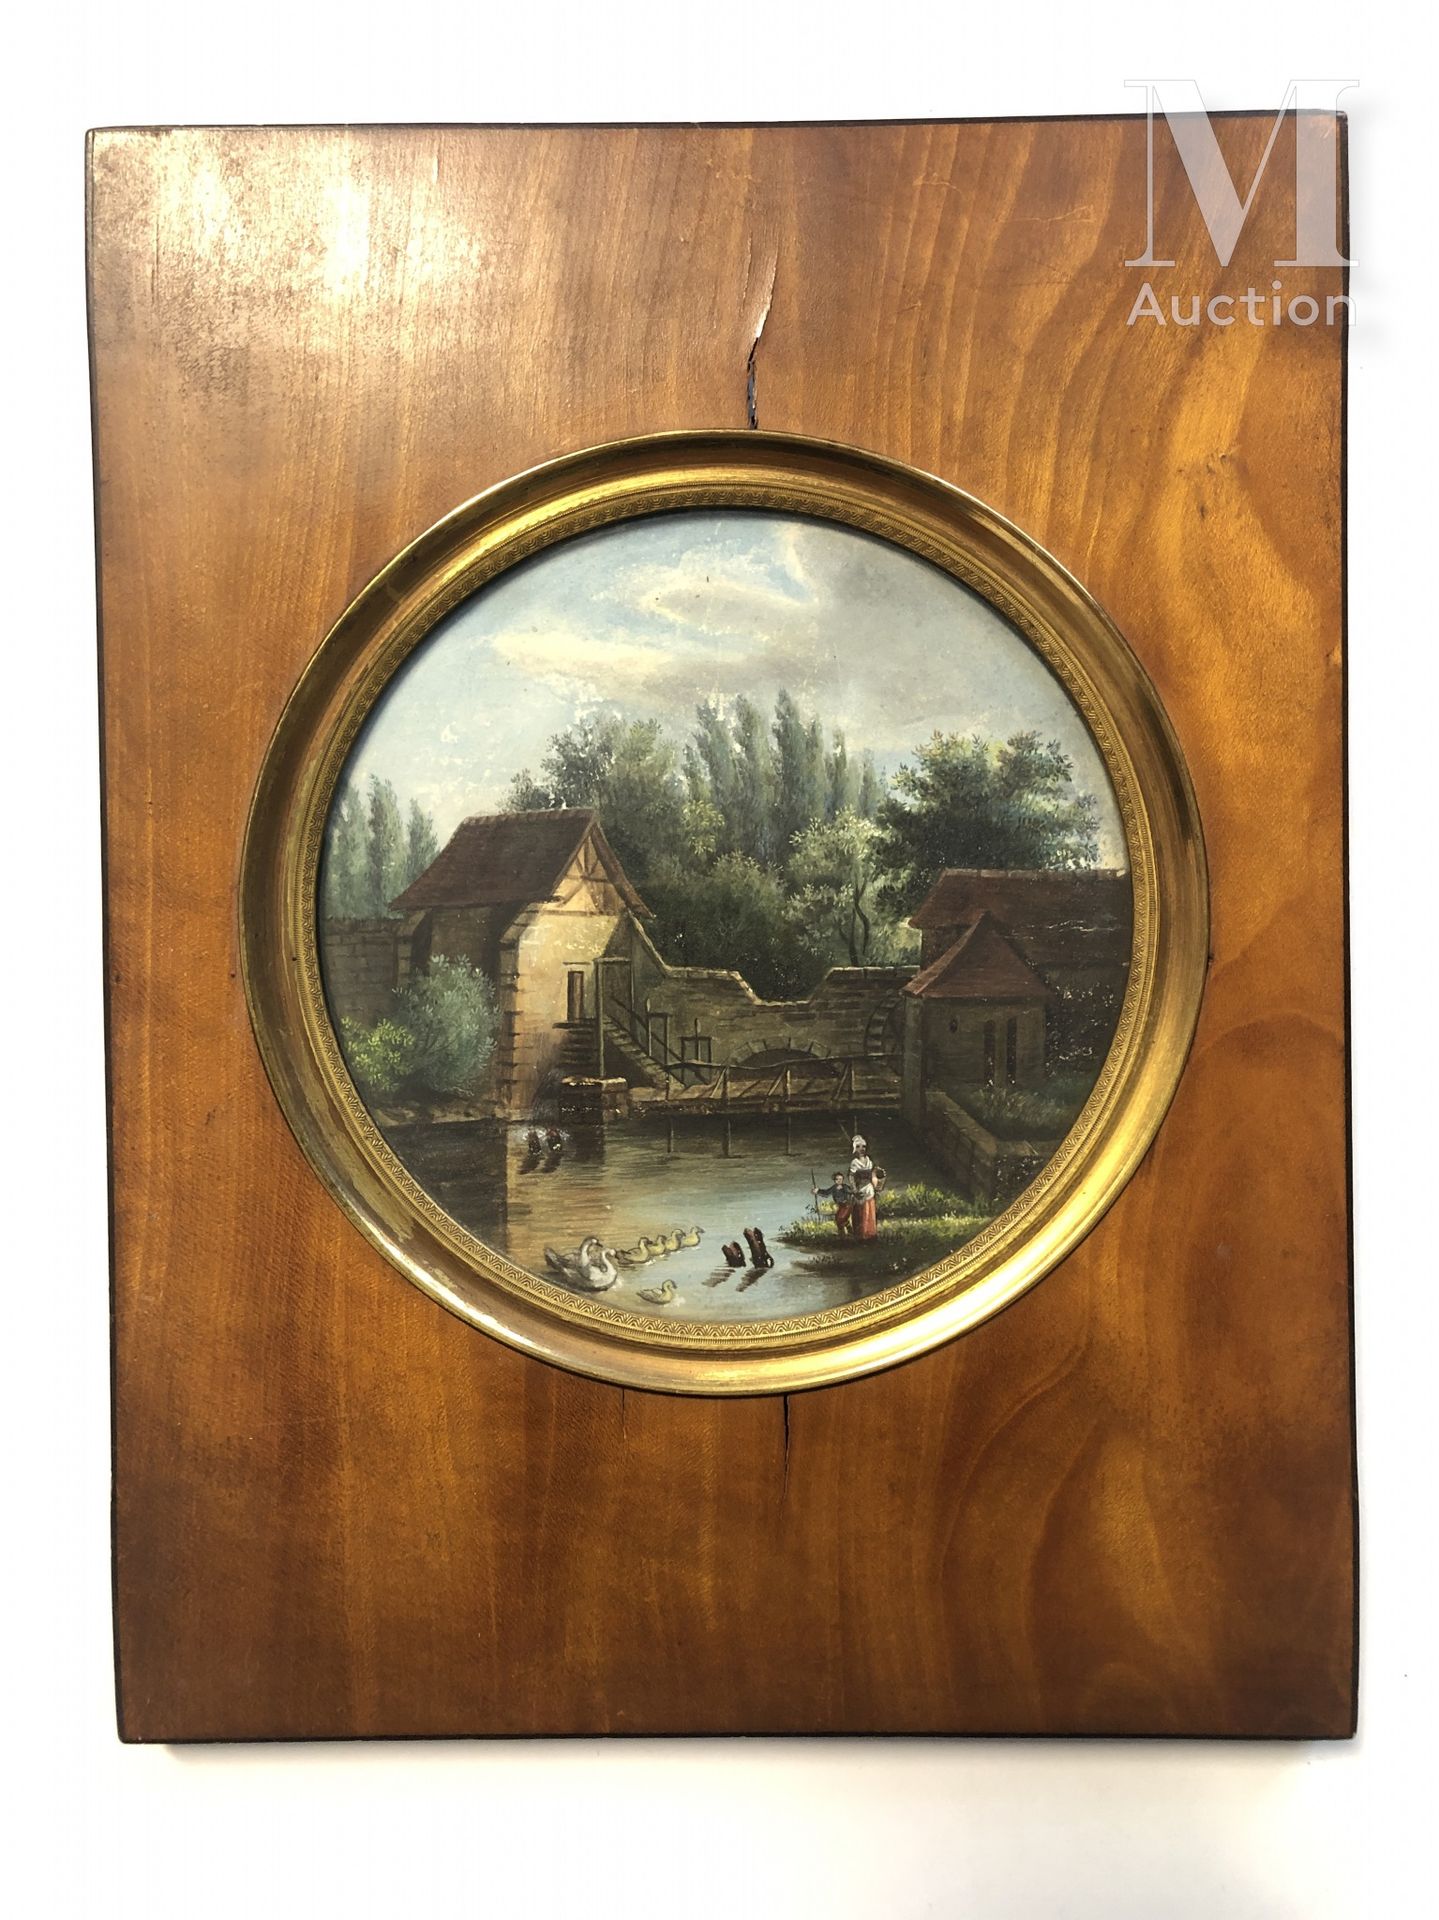 ECOLE FRANCAISE DU XIXème siècle Lavandaia vicino a un mulino

Gouache 

D 12 cm